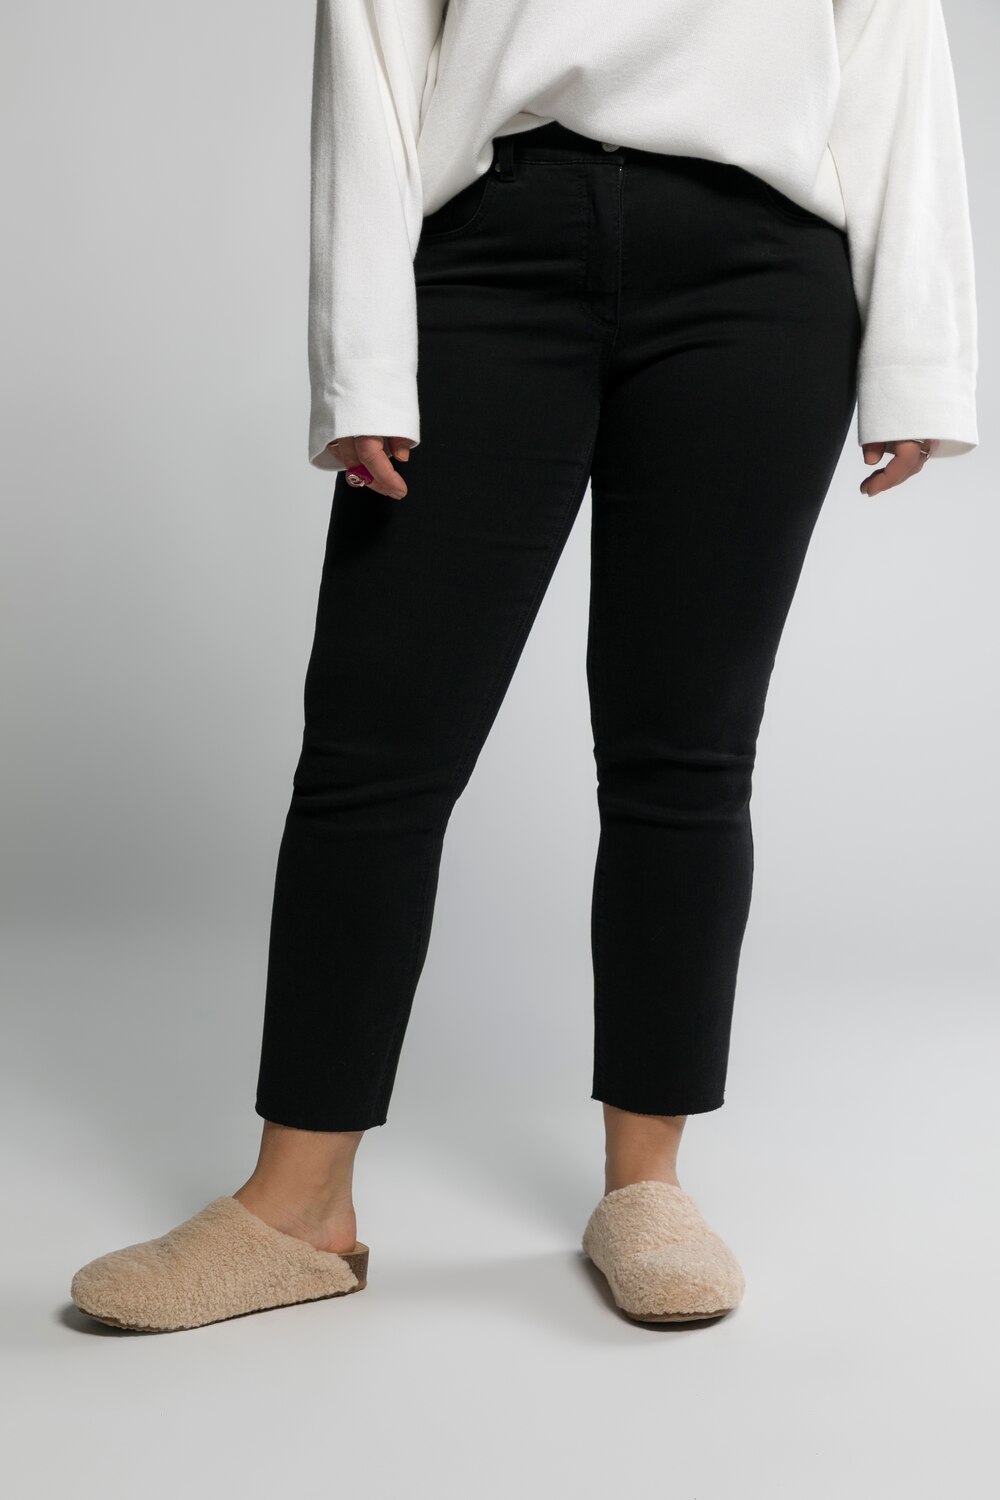 Grote Maten jeans, Dames, zwart, Maat: 50, Katoen/Polyester, Studio Untold